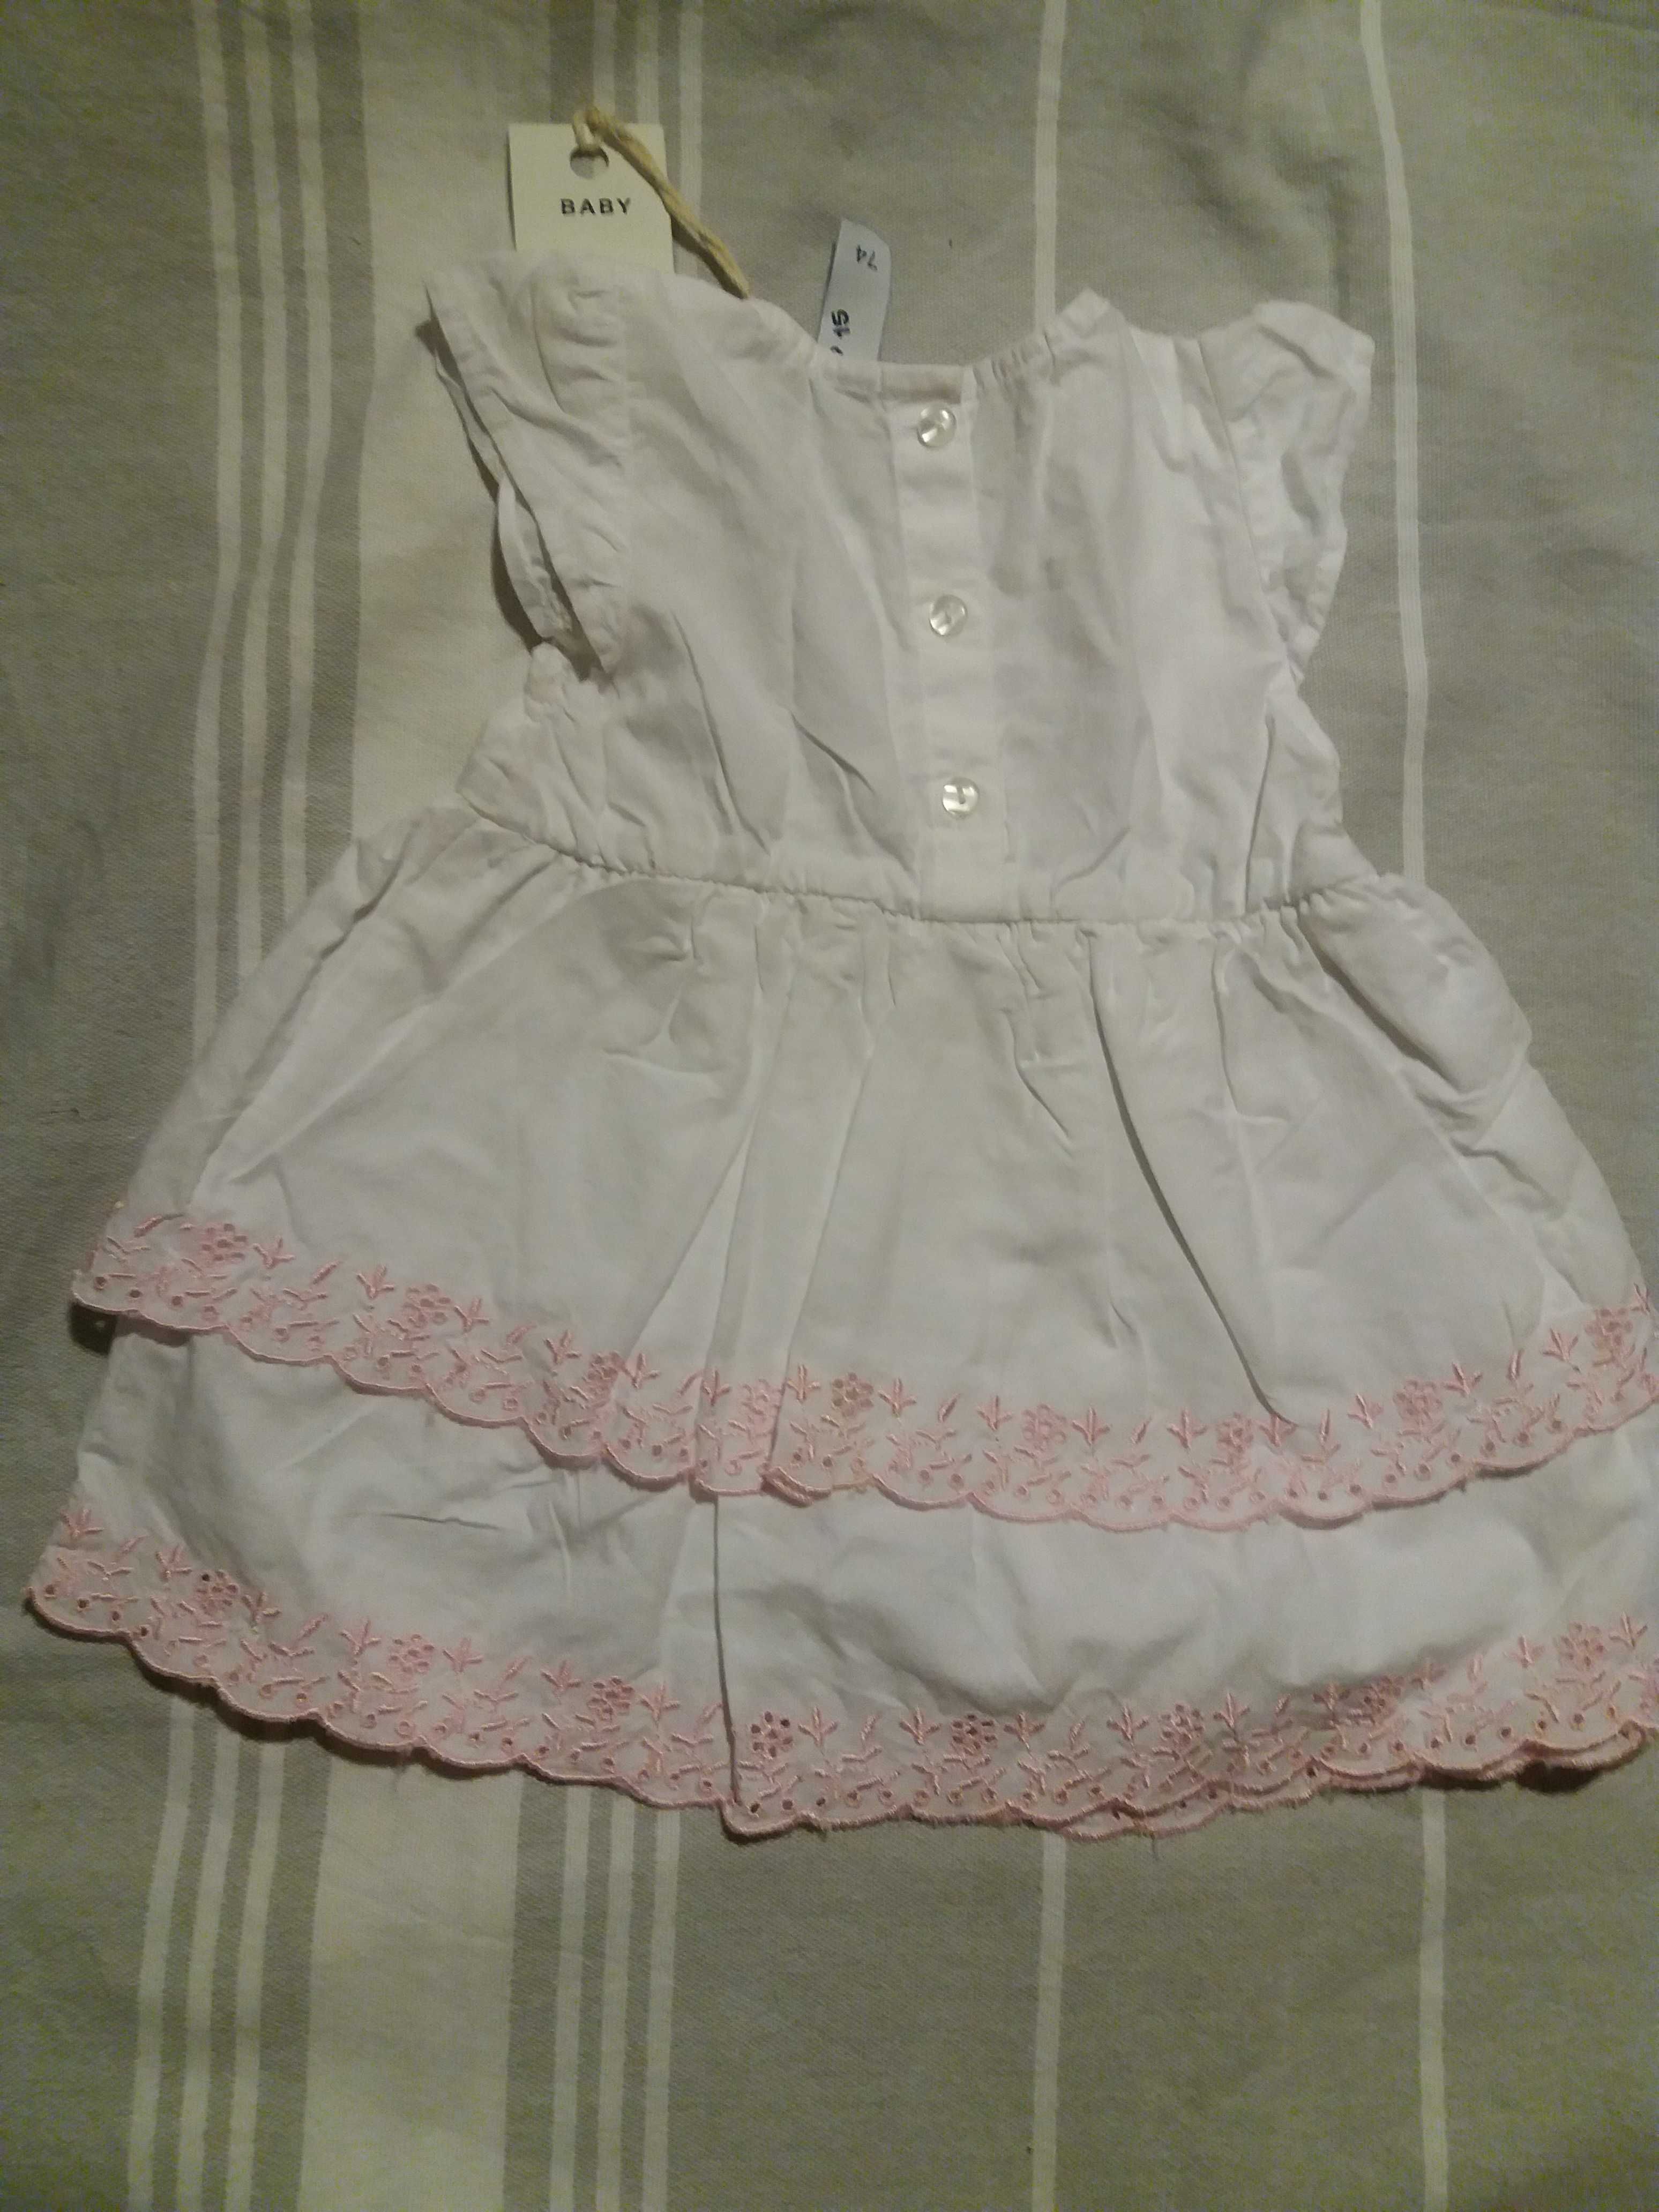 NOWA 5 10 15 biała sukienka z różowym haftem prezent chrzest 74